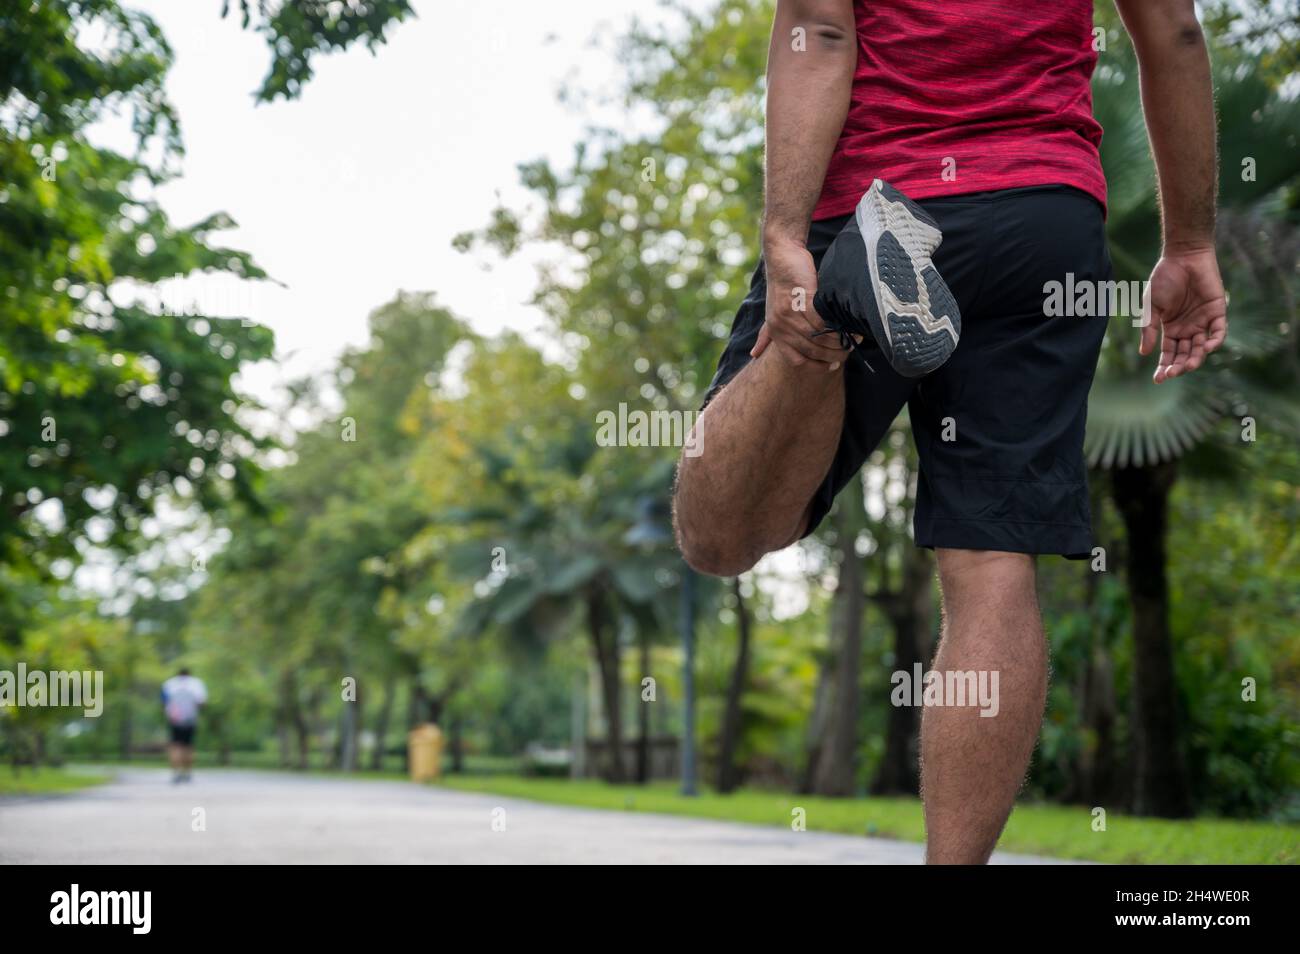 Giovane uomo di fitness runner stretching prima di correre sano stile di vita e. concetti sportivi Foto Stock